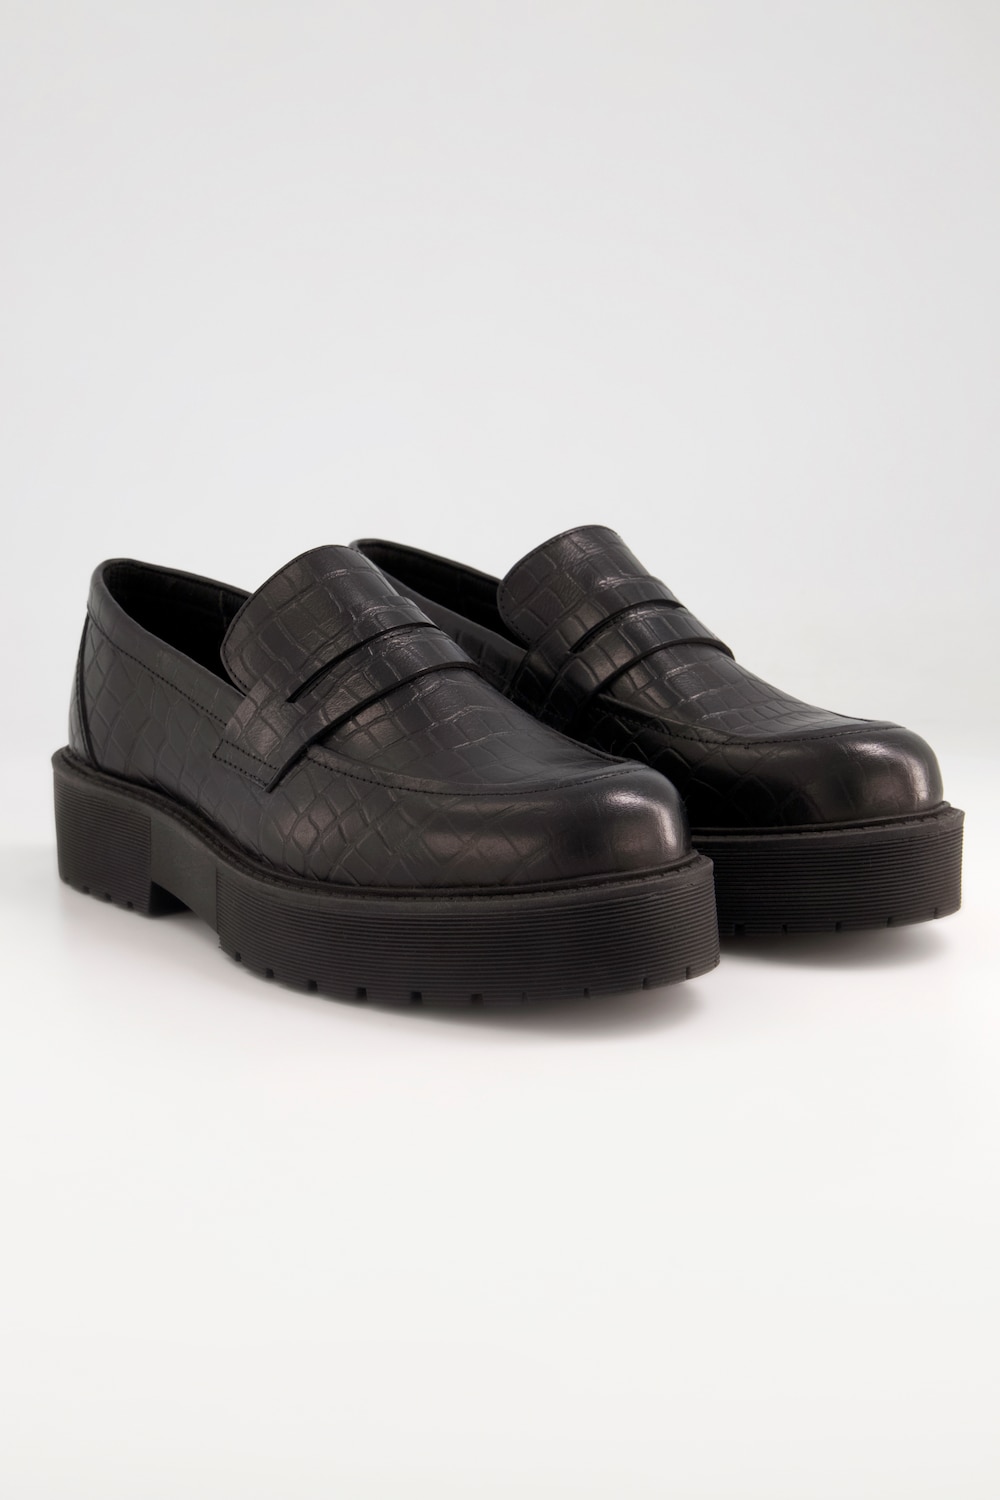 Grote Maten loafers, Dames, zwart, Maat: 43, Leer/Synthetische vezels, Studio Untold